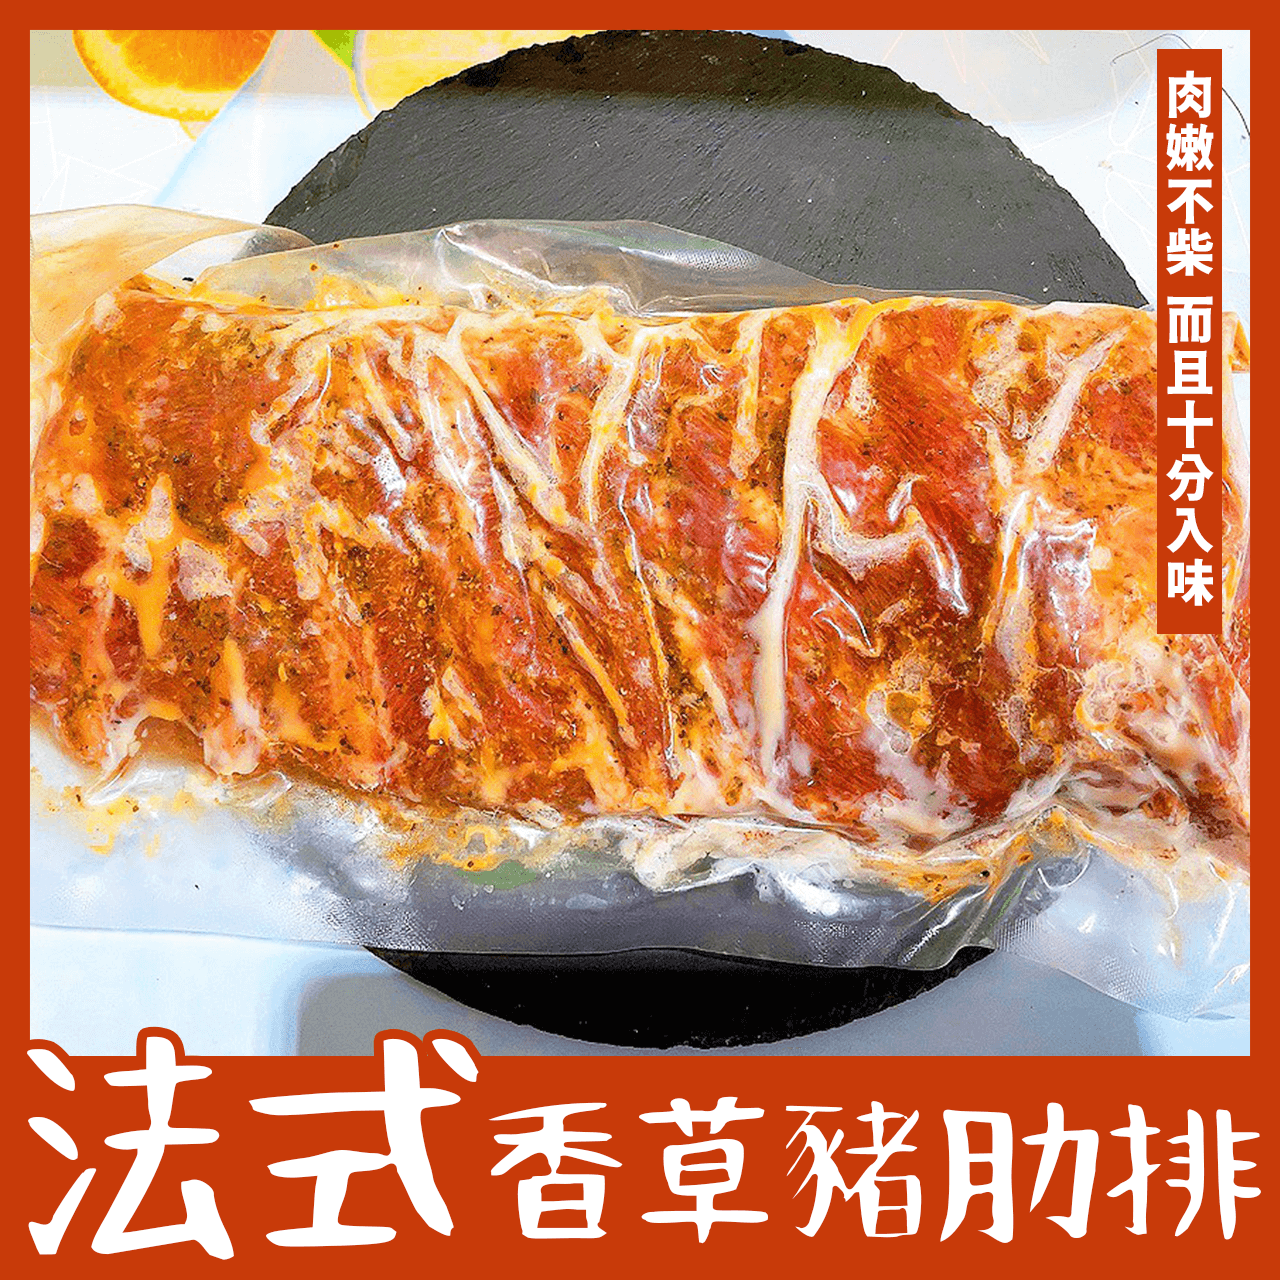 【天天來海鮮】法式香草豬肋排1000克 產地:台灣 加熱即食 5人份